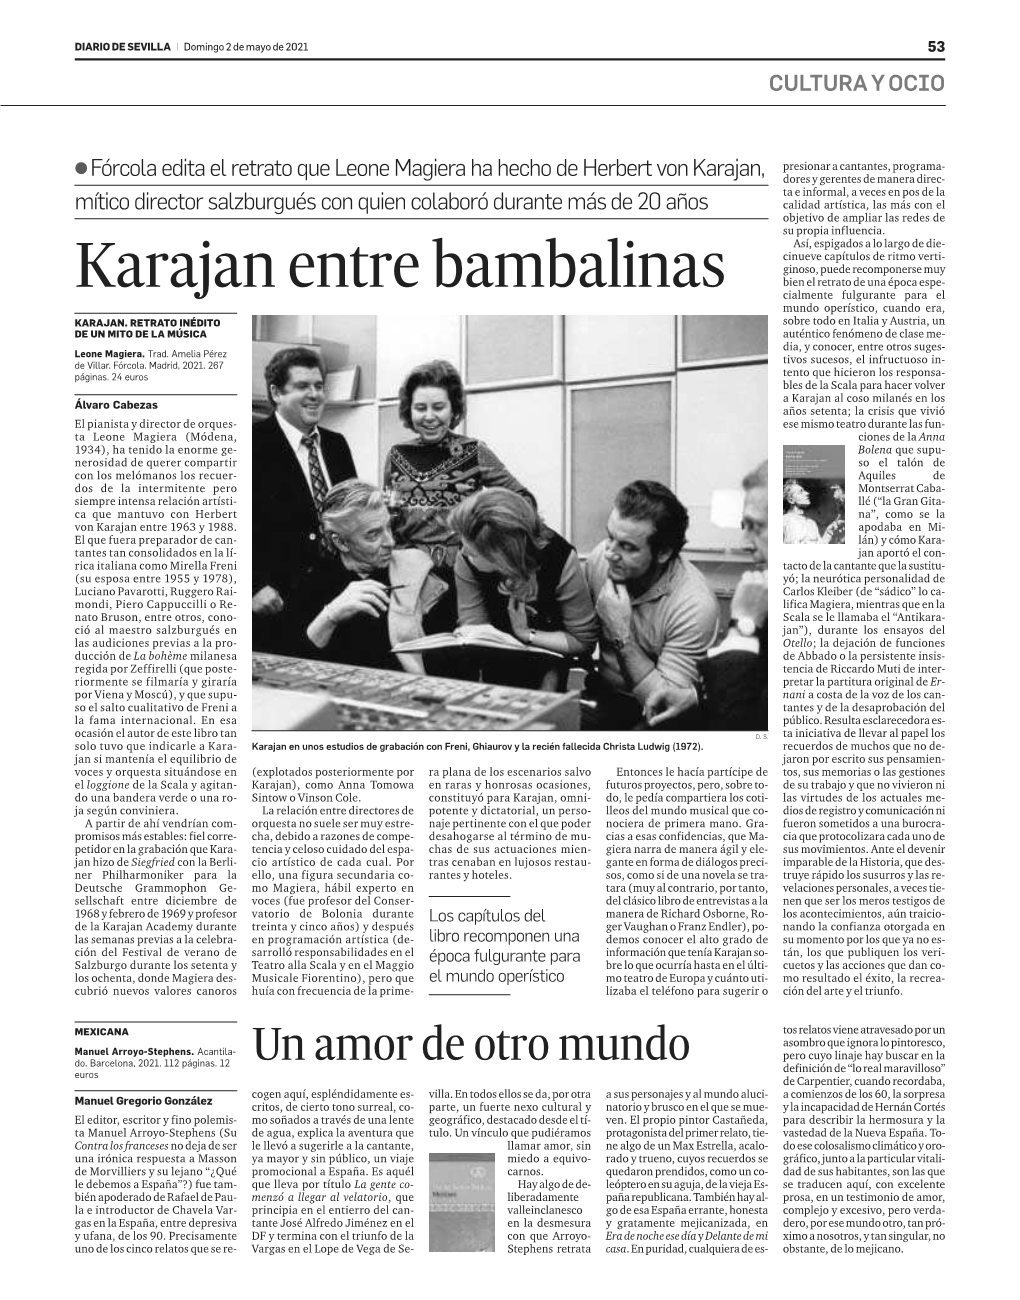 Karajan Entre Bambalinas Bienelretratodeunaépocaespe- Cialmente Fulgurante Para El Mundo Operístico, Cuando Era, KARAJAN